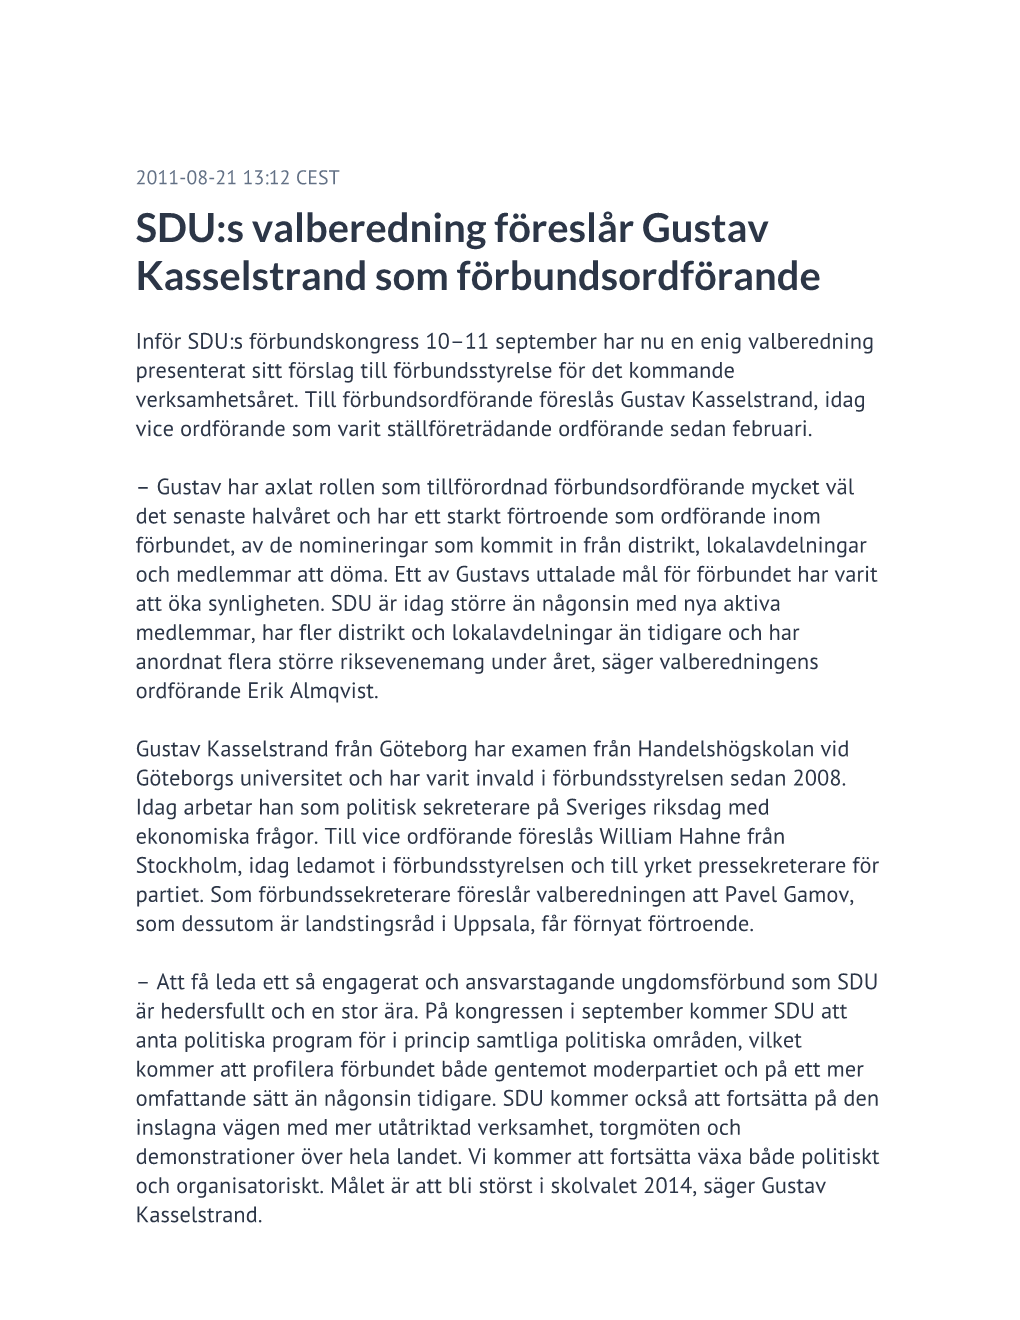 SDU:S Valberedning Föreslår Gustav Kasselstrand Som Förbundsordförande